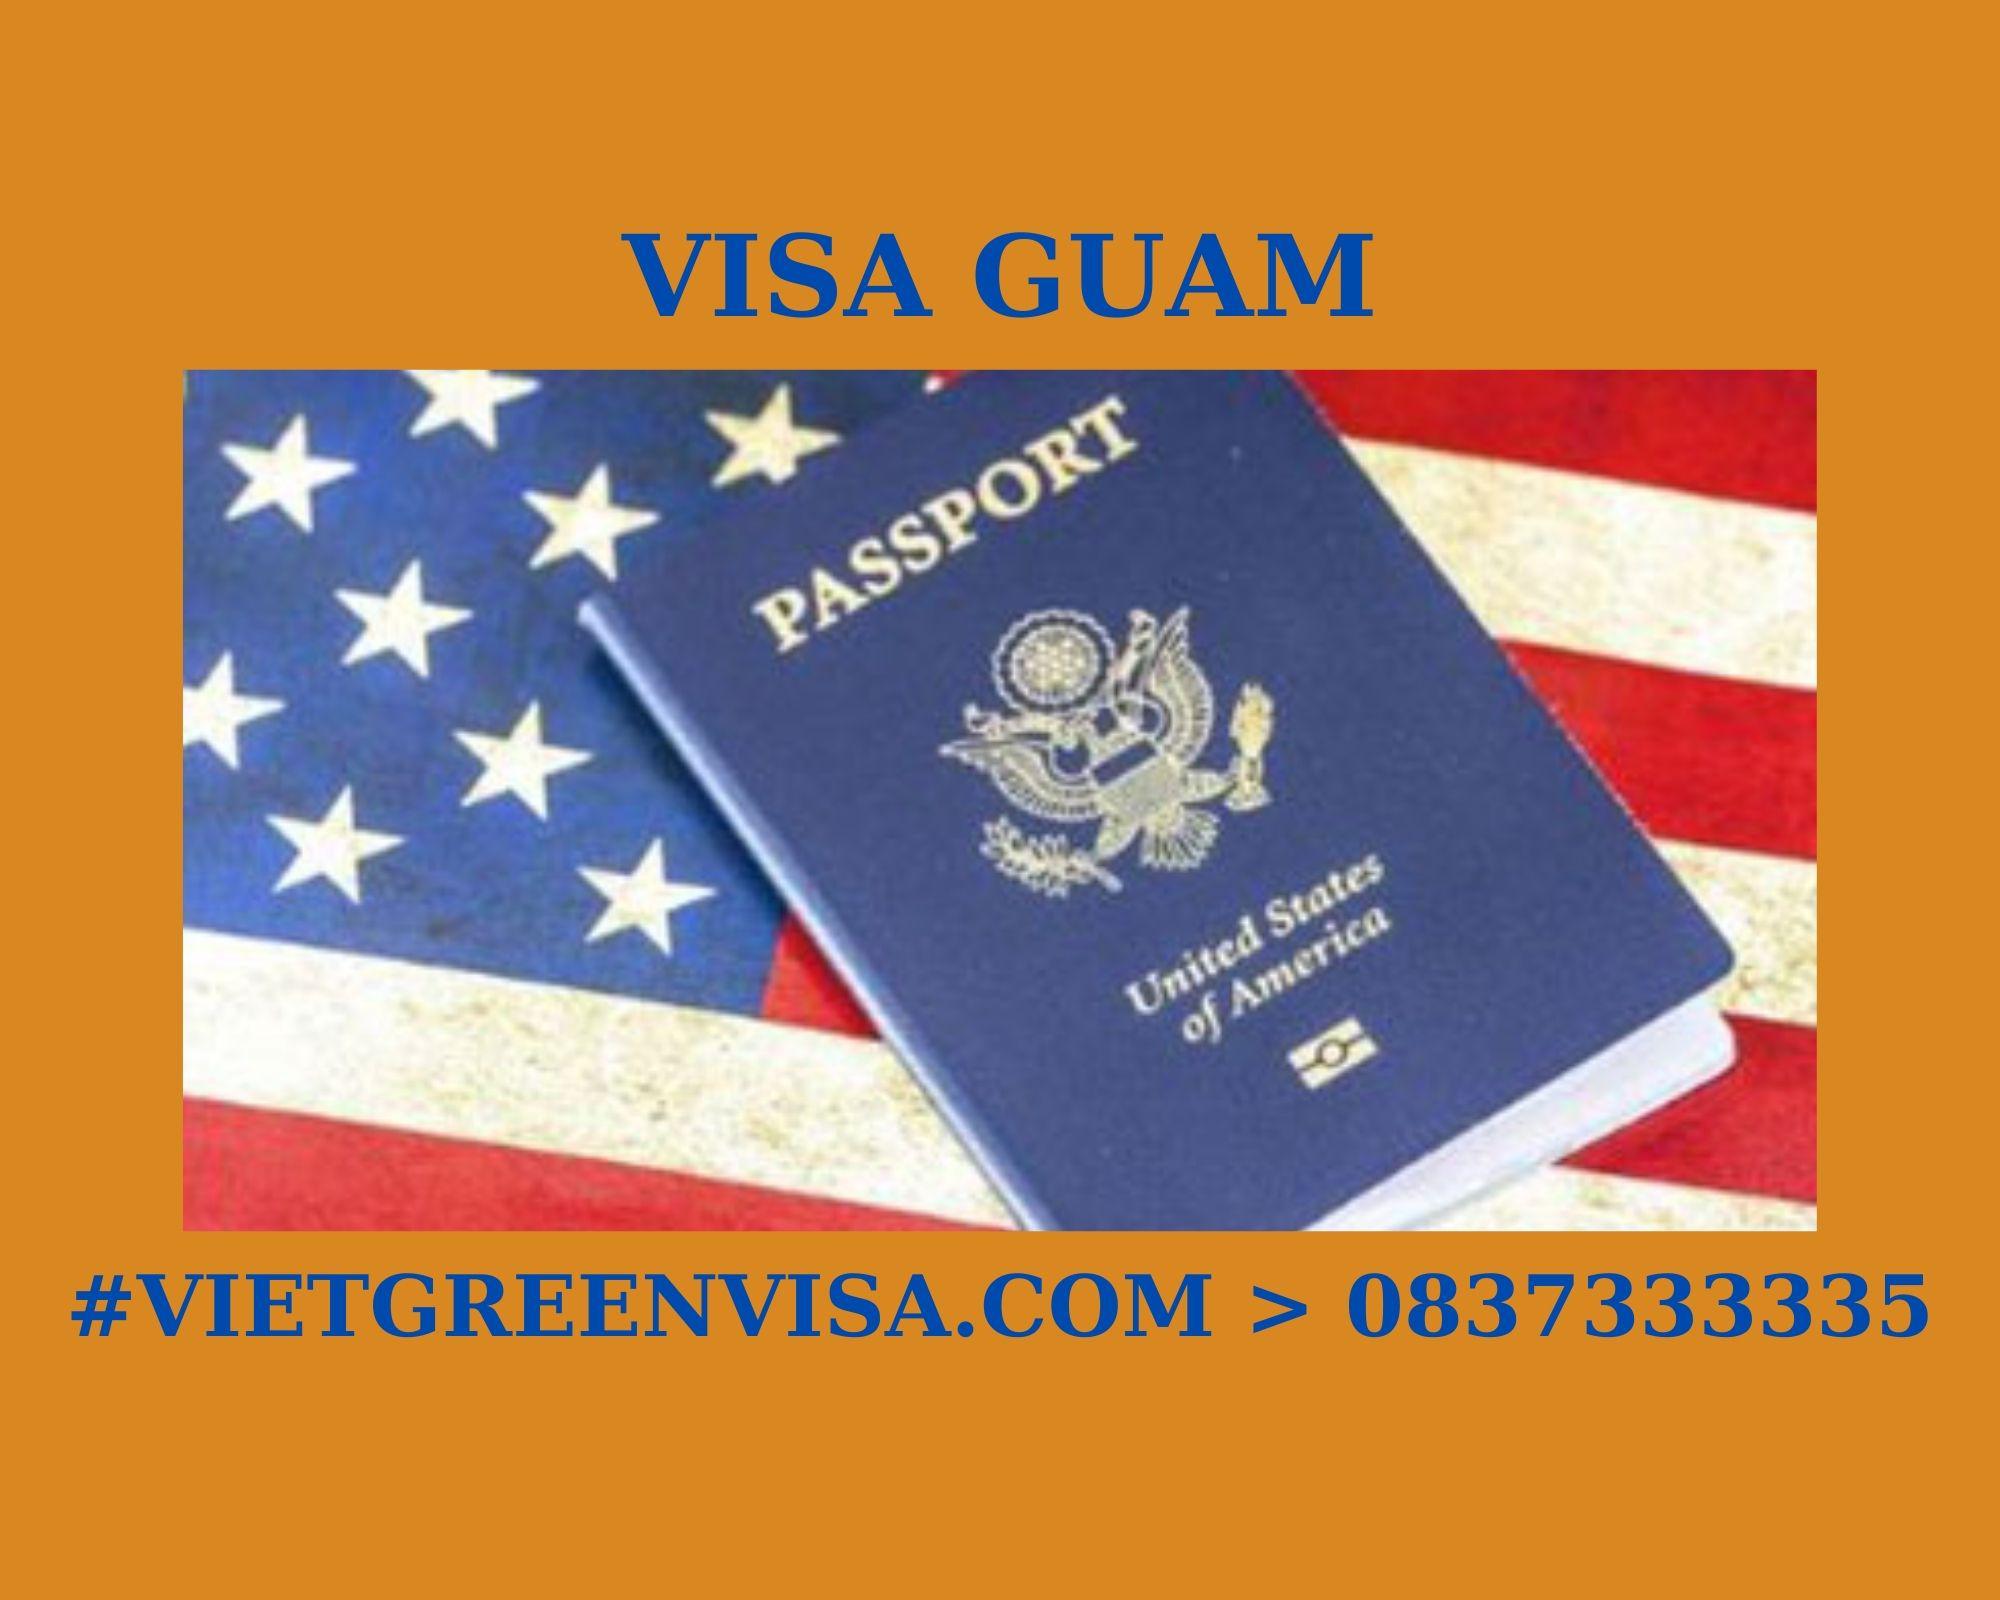 Dịch vụ visa kết hôn Guam giá rẻ, Làm visa kết hôn Guam trọn gói, Xin visa đi Guam kết hôn , visa Guam